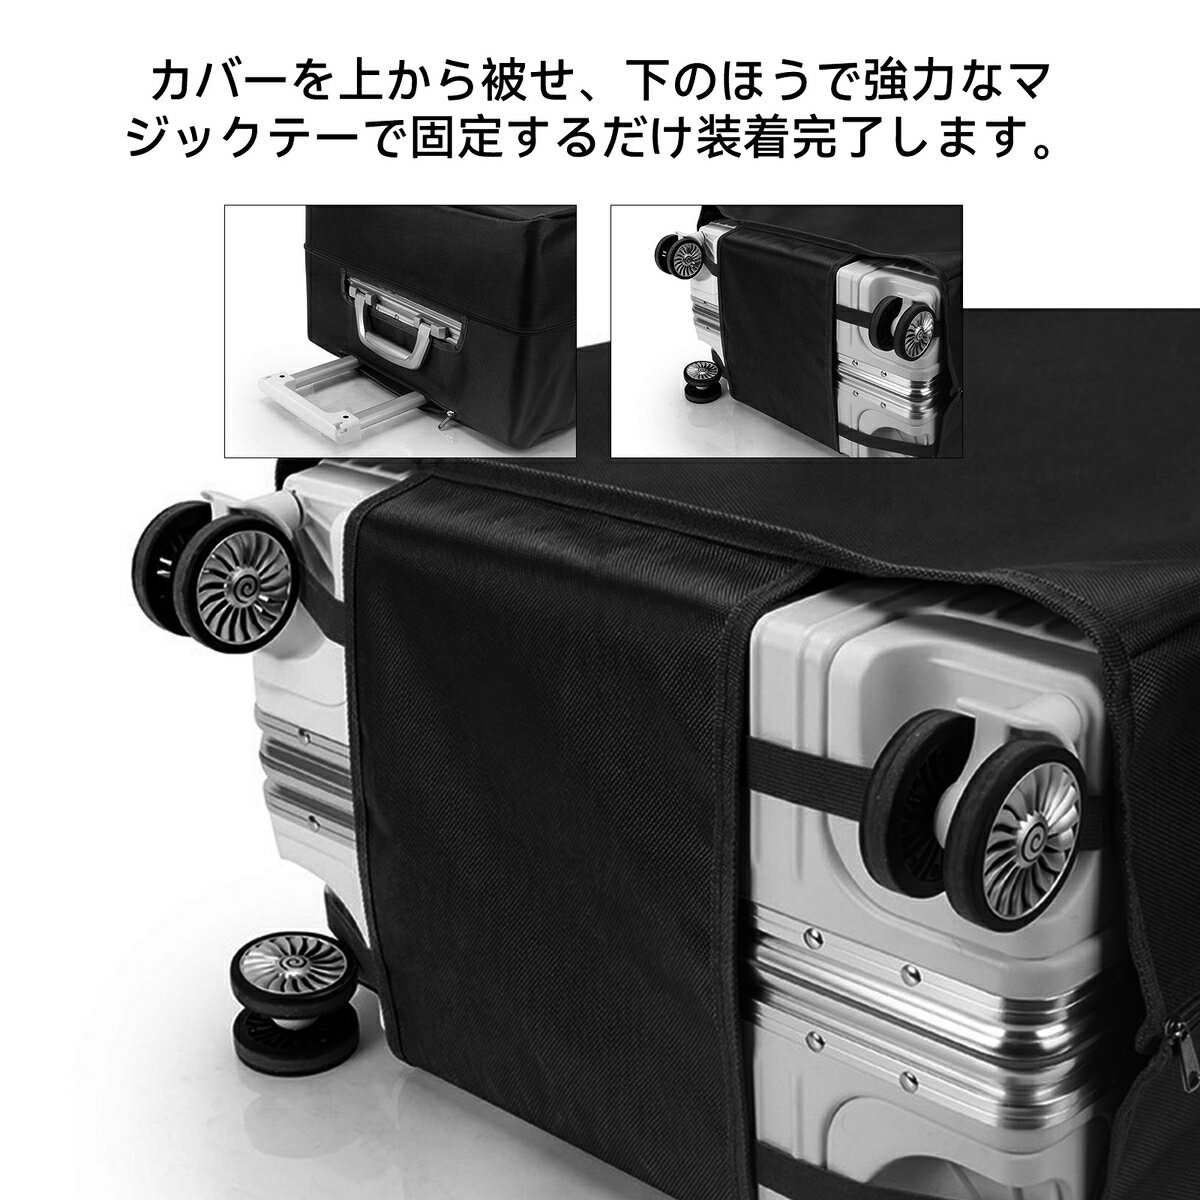 【送料無料】TABITORA(タビトラ) スーツケースカバー キャリーケースカバー 保護カバー 撥水加工 キズ防止 汚れ防止 カバー Sサイズ XT0002-S 3